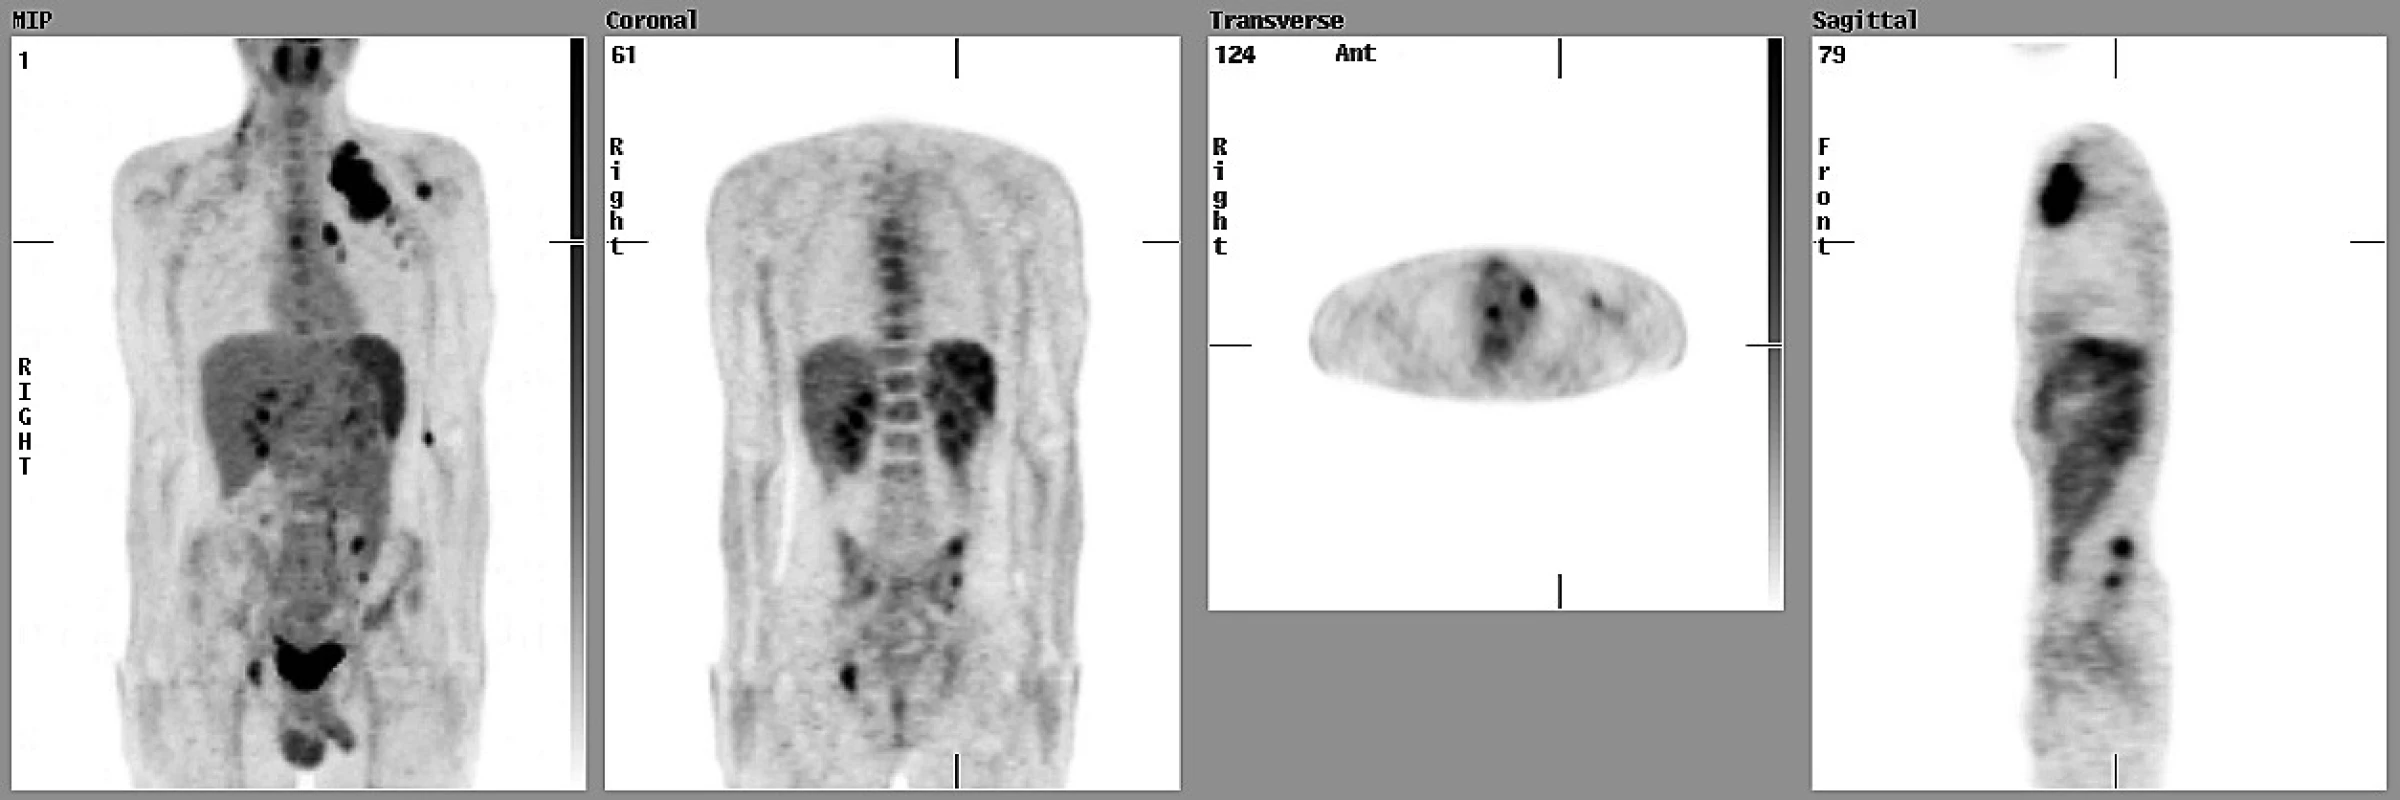 Osmnáctiletý pacient s HD měl podle CT a UZ vyšetření postižené uzliny vpravo na krku, vlevo periklavikulárně a axilárně, infiltrovanou slezinu (stadium III S). PET zobrazila další ložiska v mediastinu, v pravém plicním hilu a víceložiskové postižení skeletu (obratle, pánev) a správně zvýšila klinické stadium na IV S.